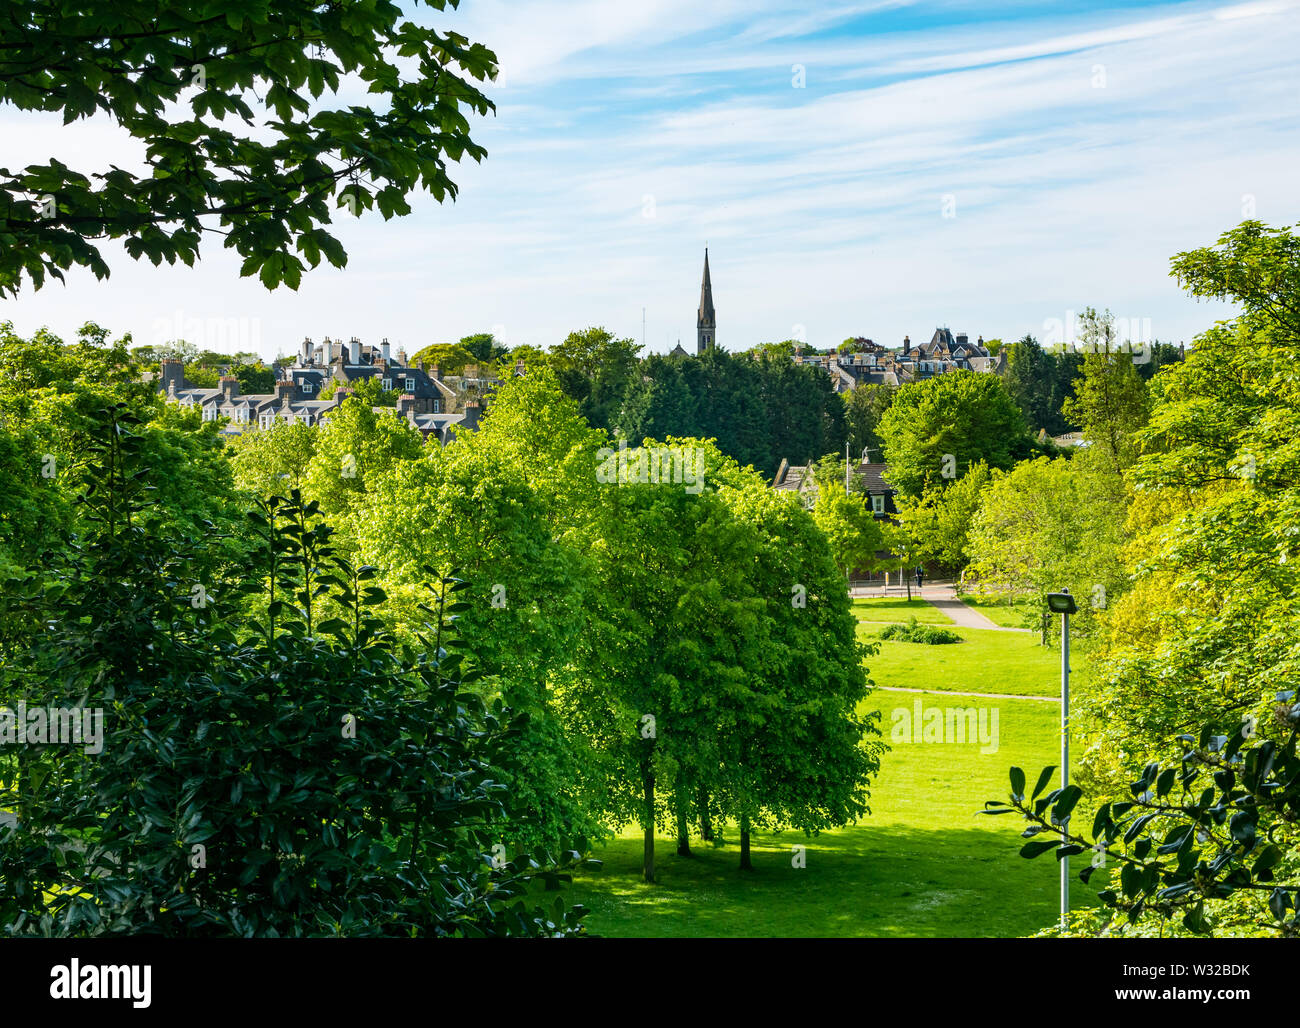 Bon Accord jardins en terrasse, parc de la ville locale avec clocher à Sunshine, Ville d'Aberdeen, Écosse, Royaume-Uni Banque D'Images